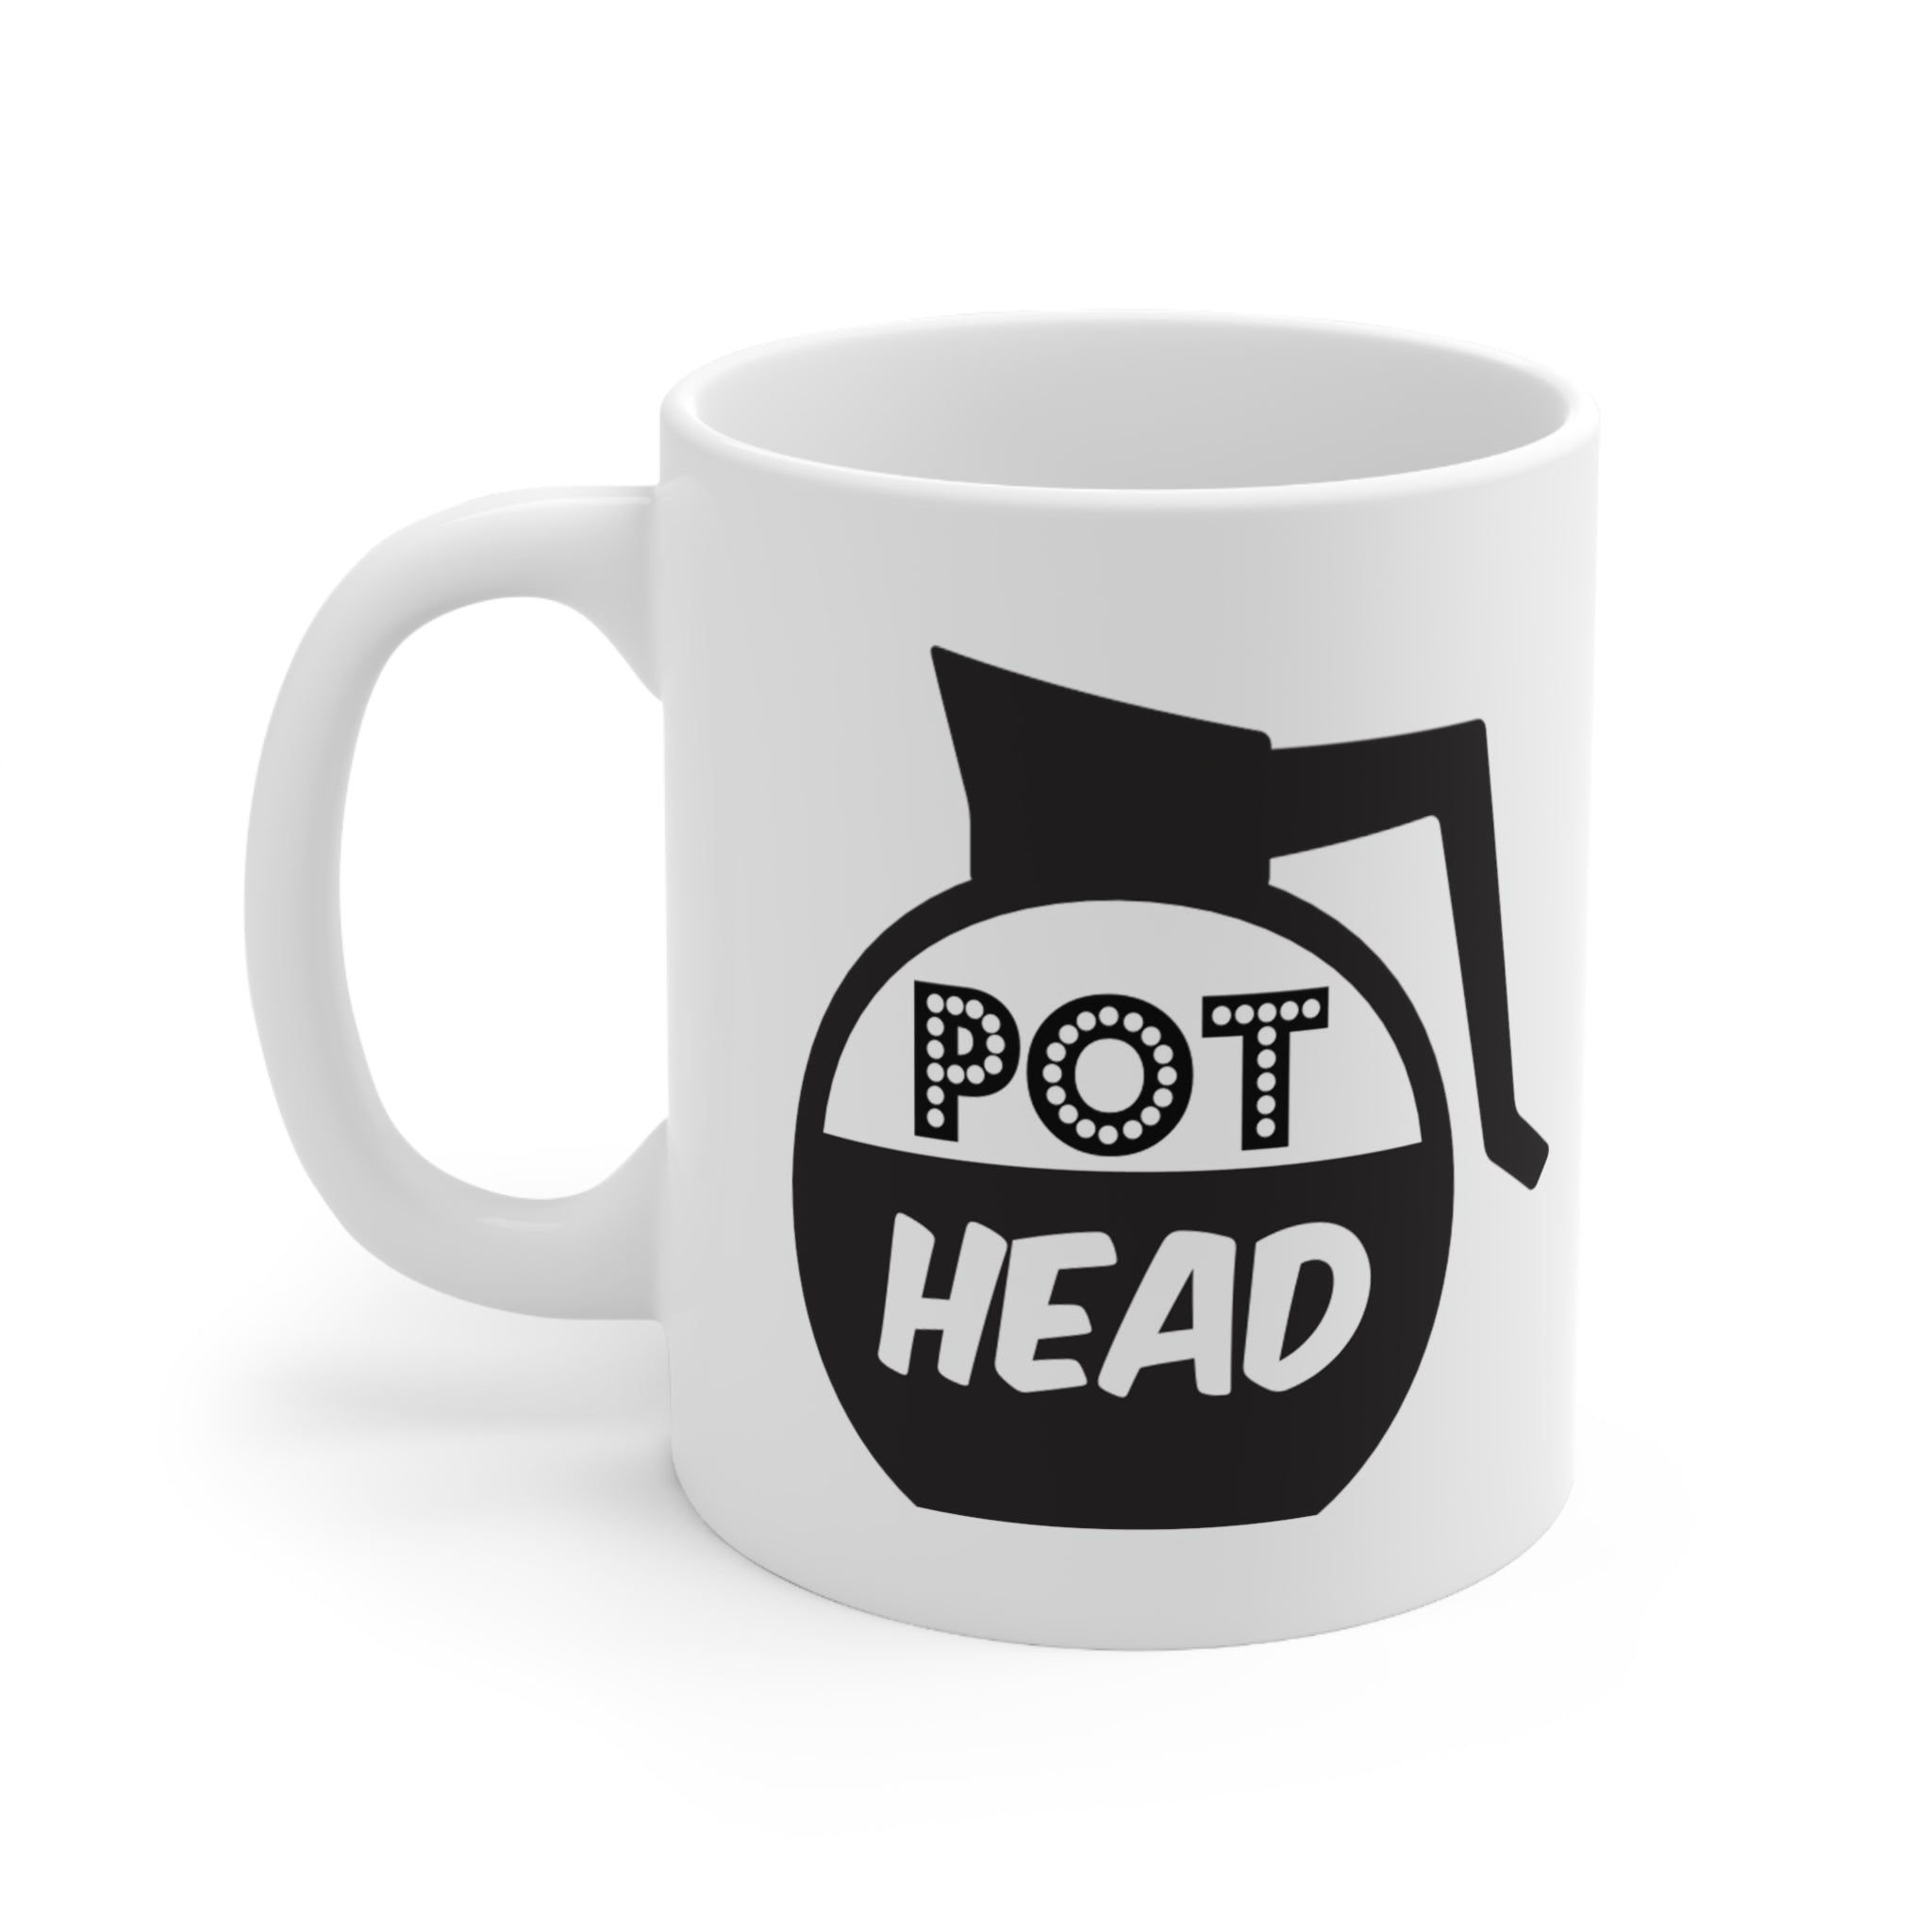 Pot Head Mug